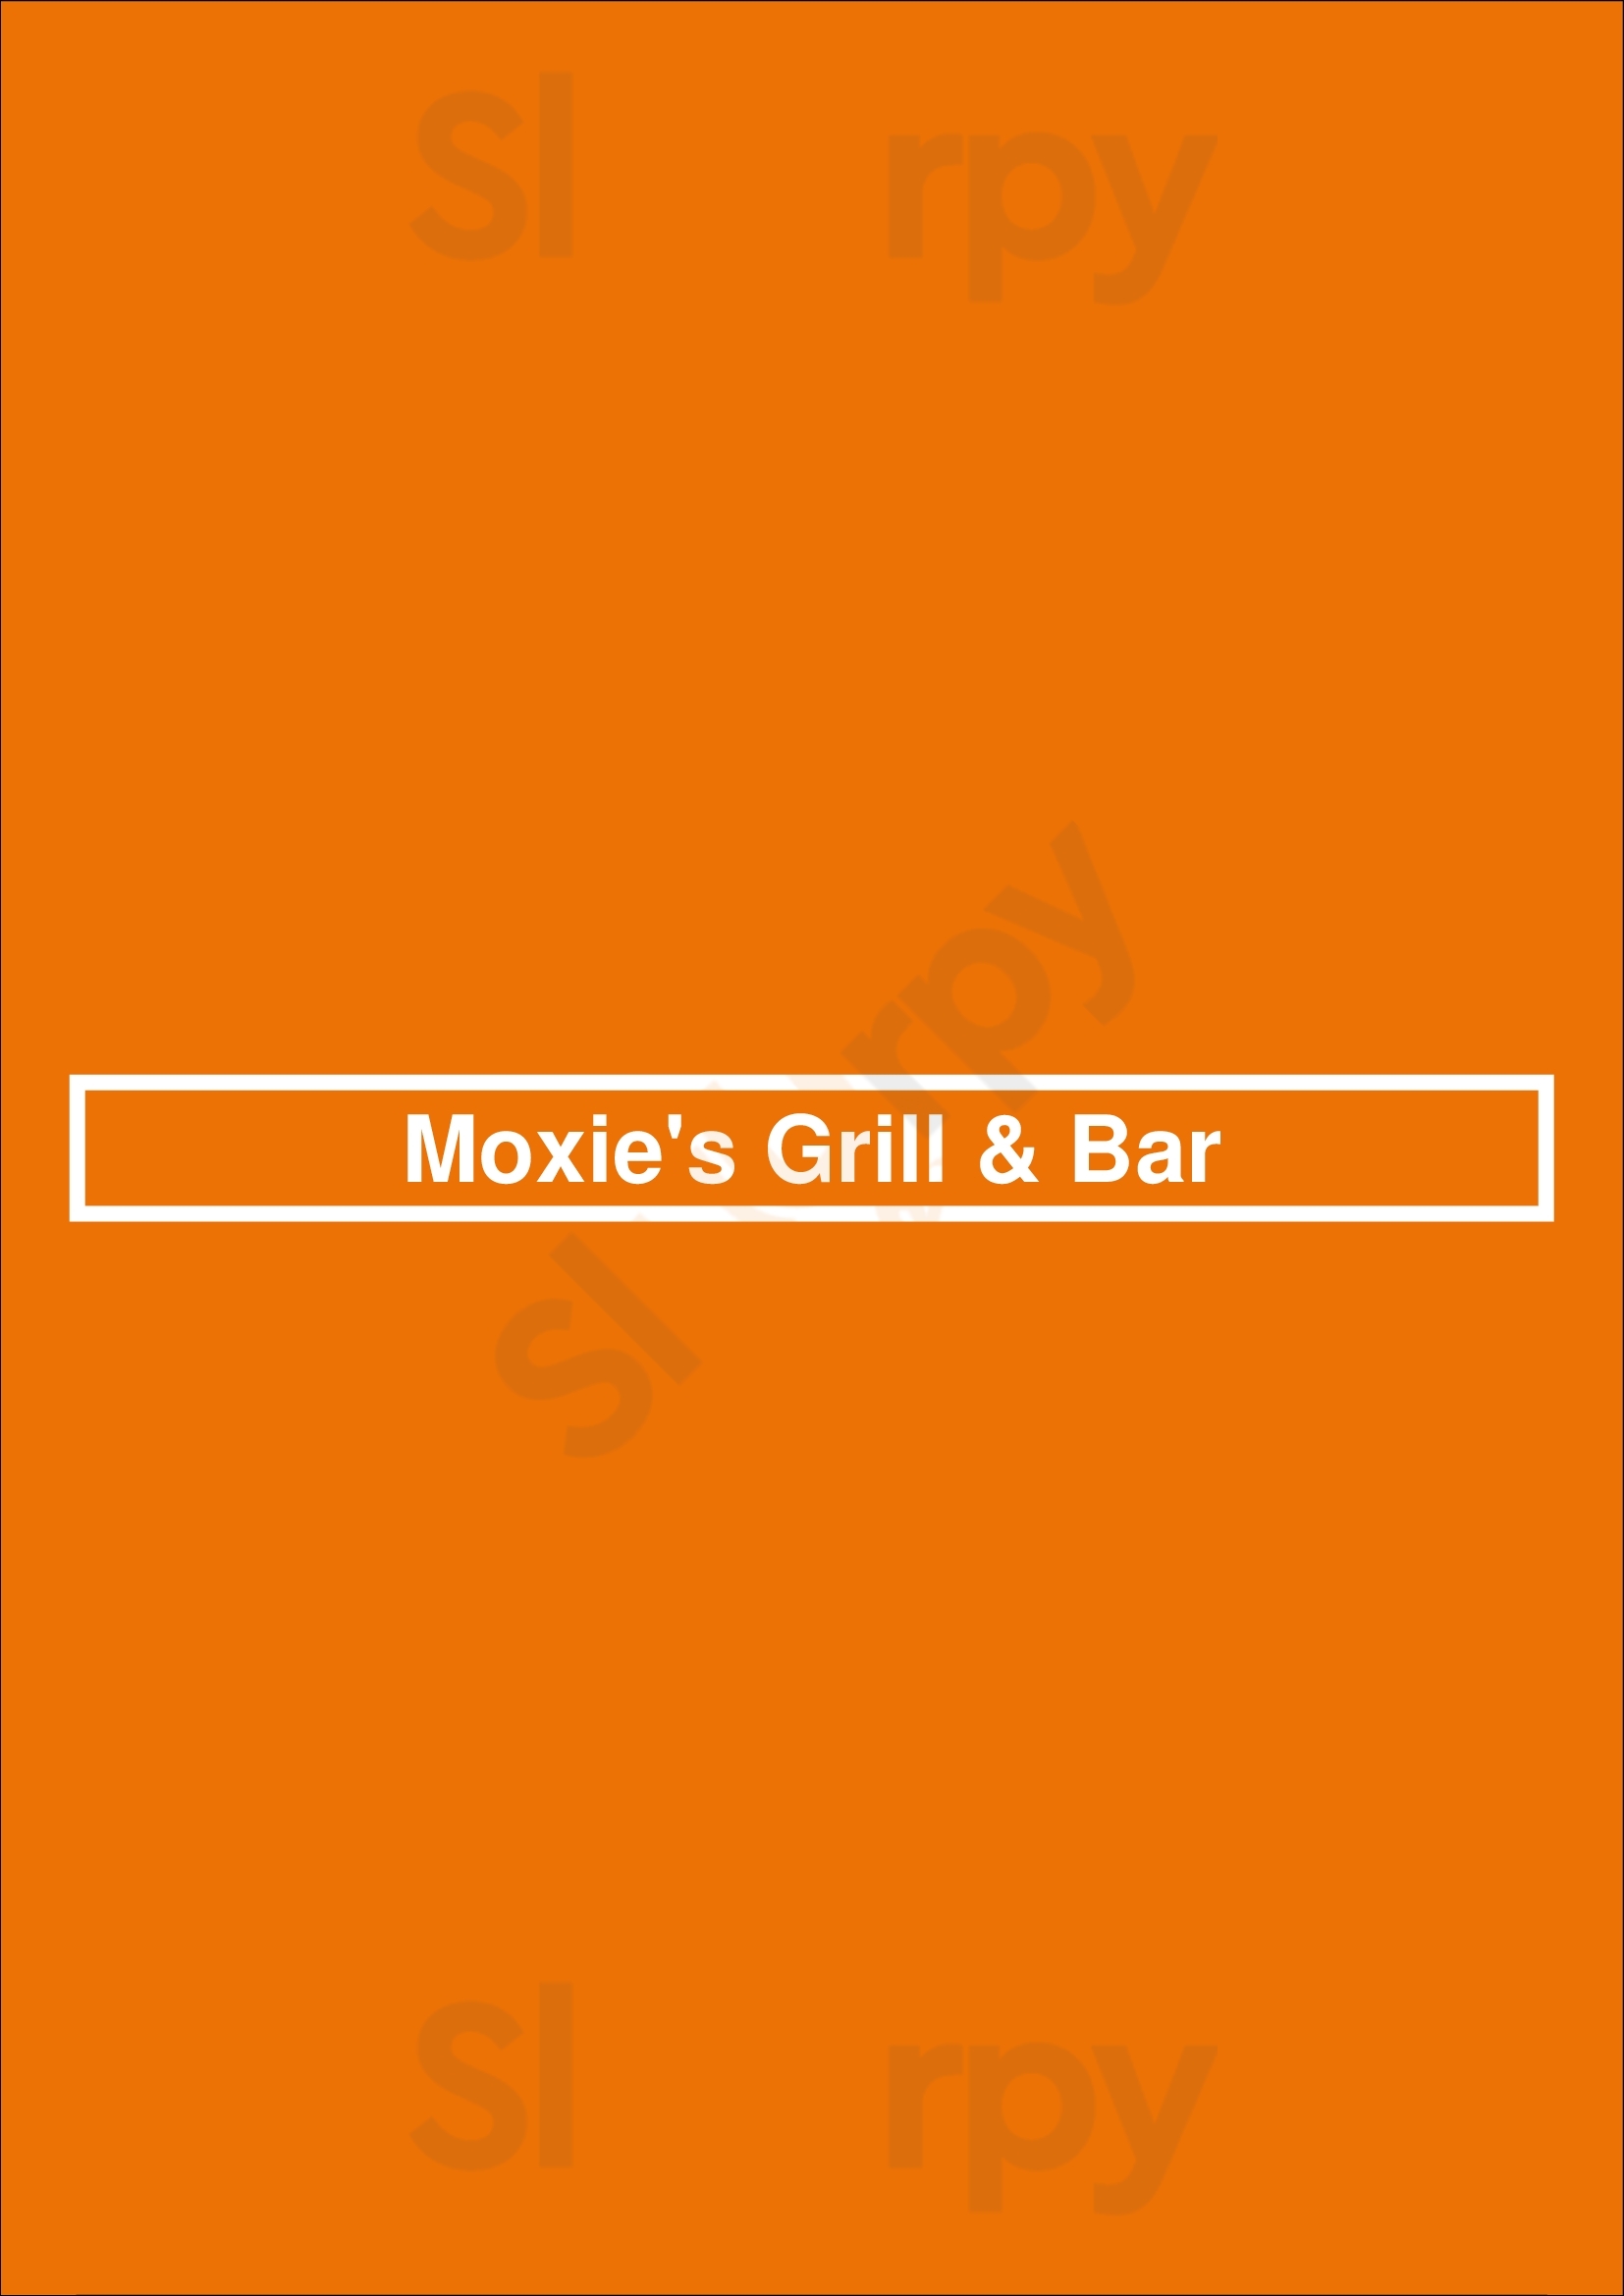 Moxie's Grill & Bar Calgary Menu - 1